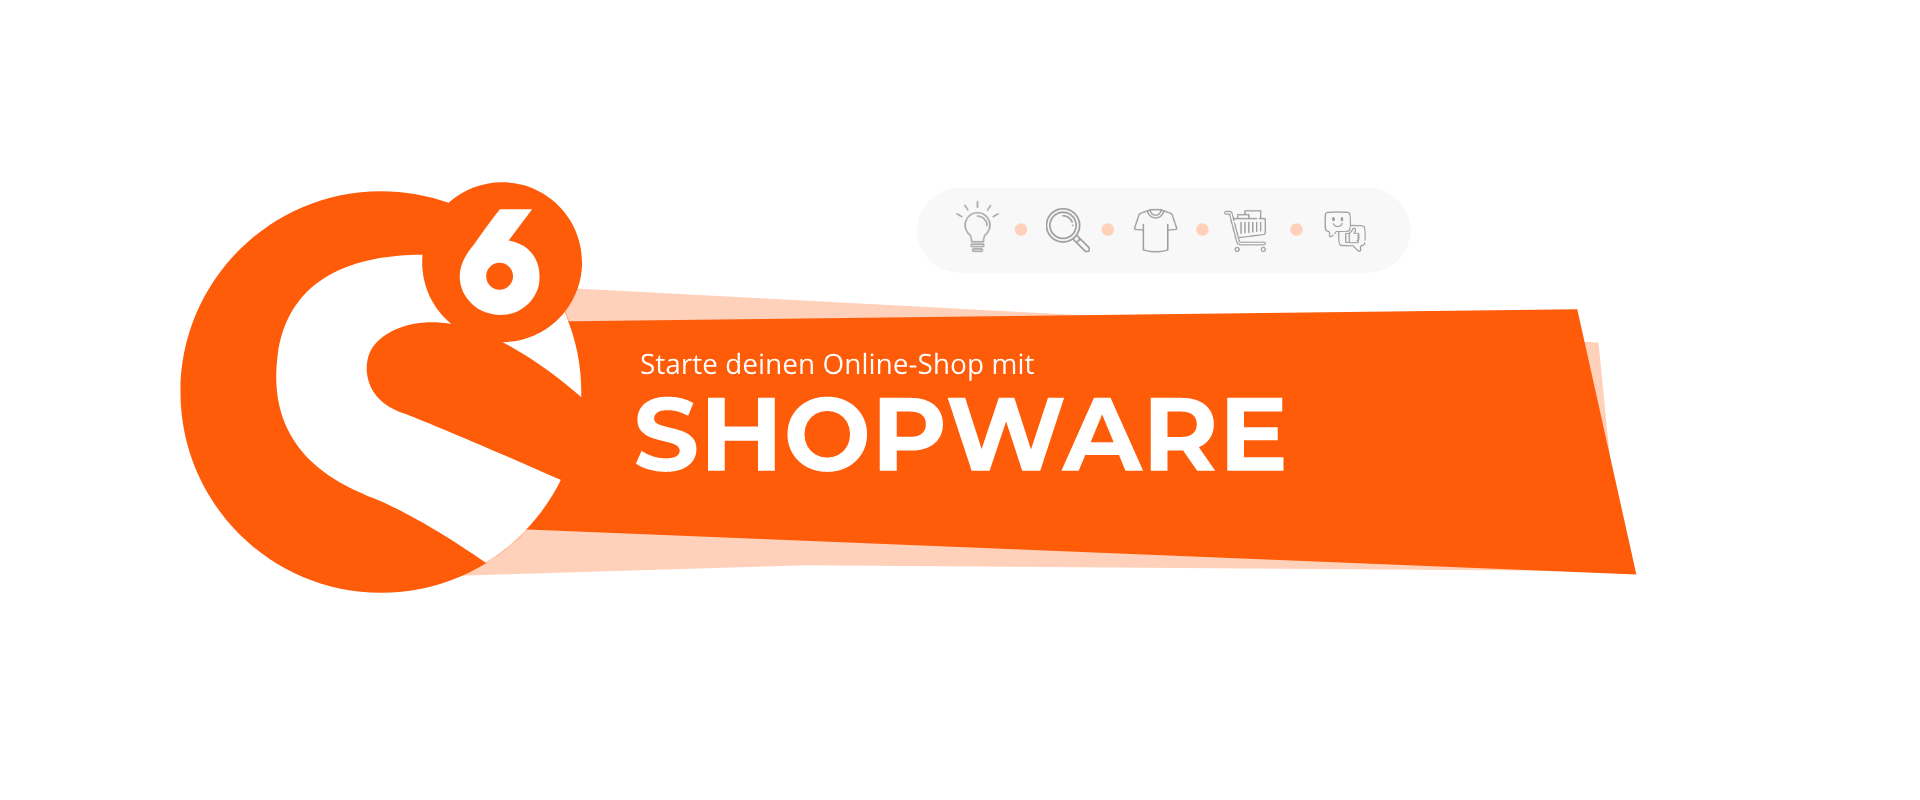 Vorteile eines Shopware Onlineshops: